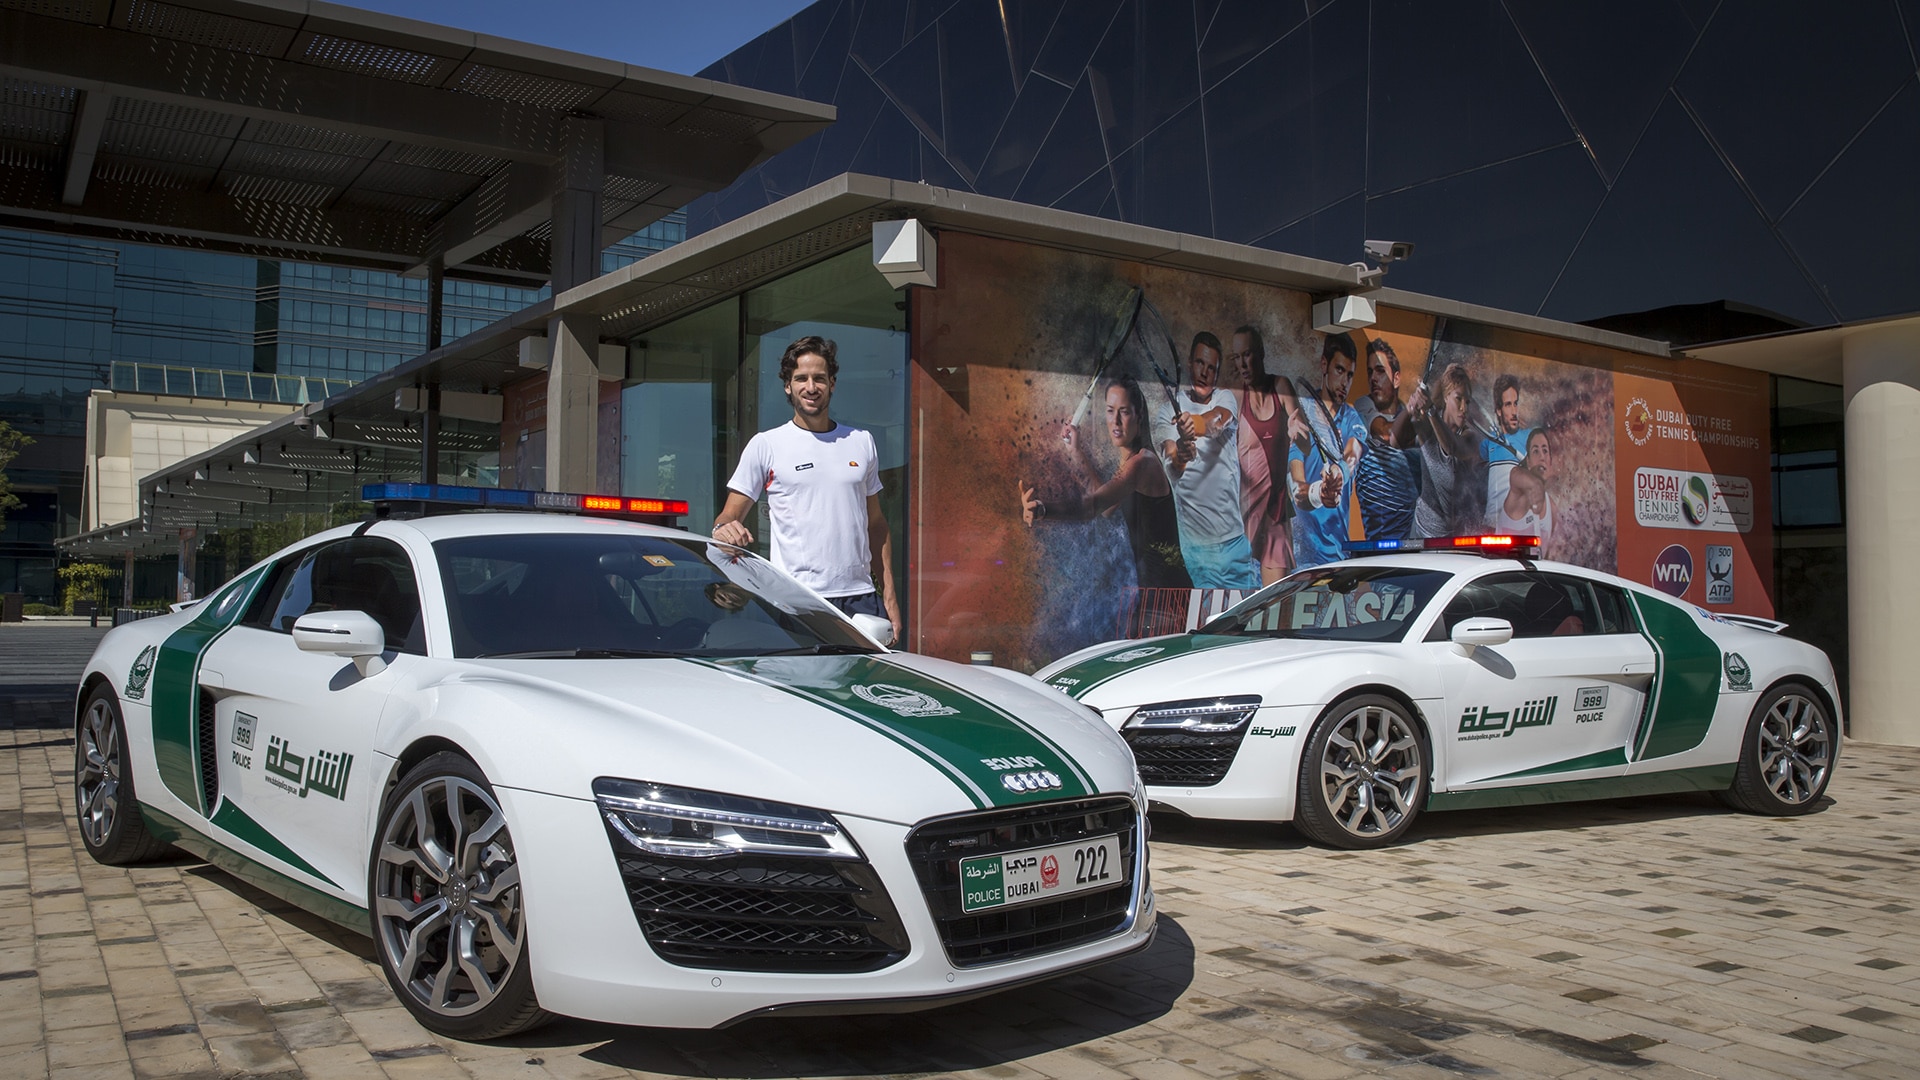 Суперкары дорожной полиции Дубая: Джеймс Бонд удавился бы от зависти